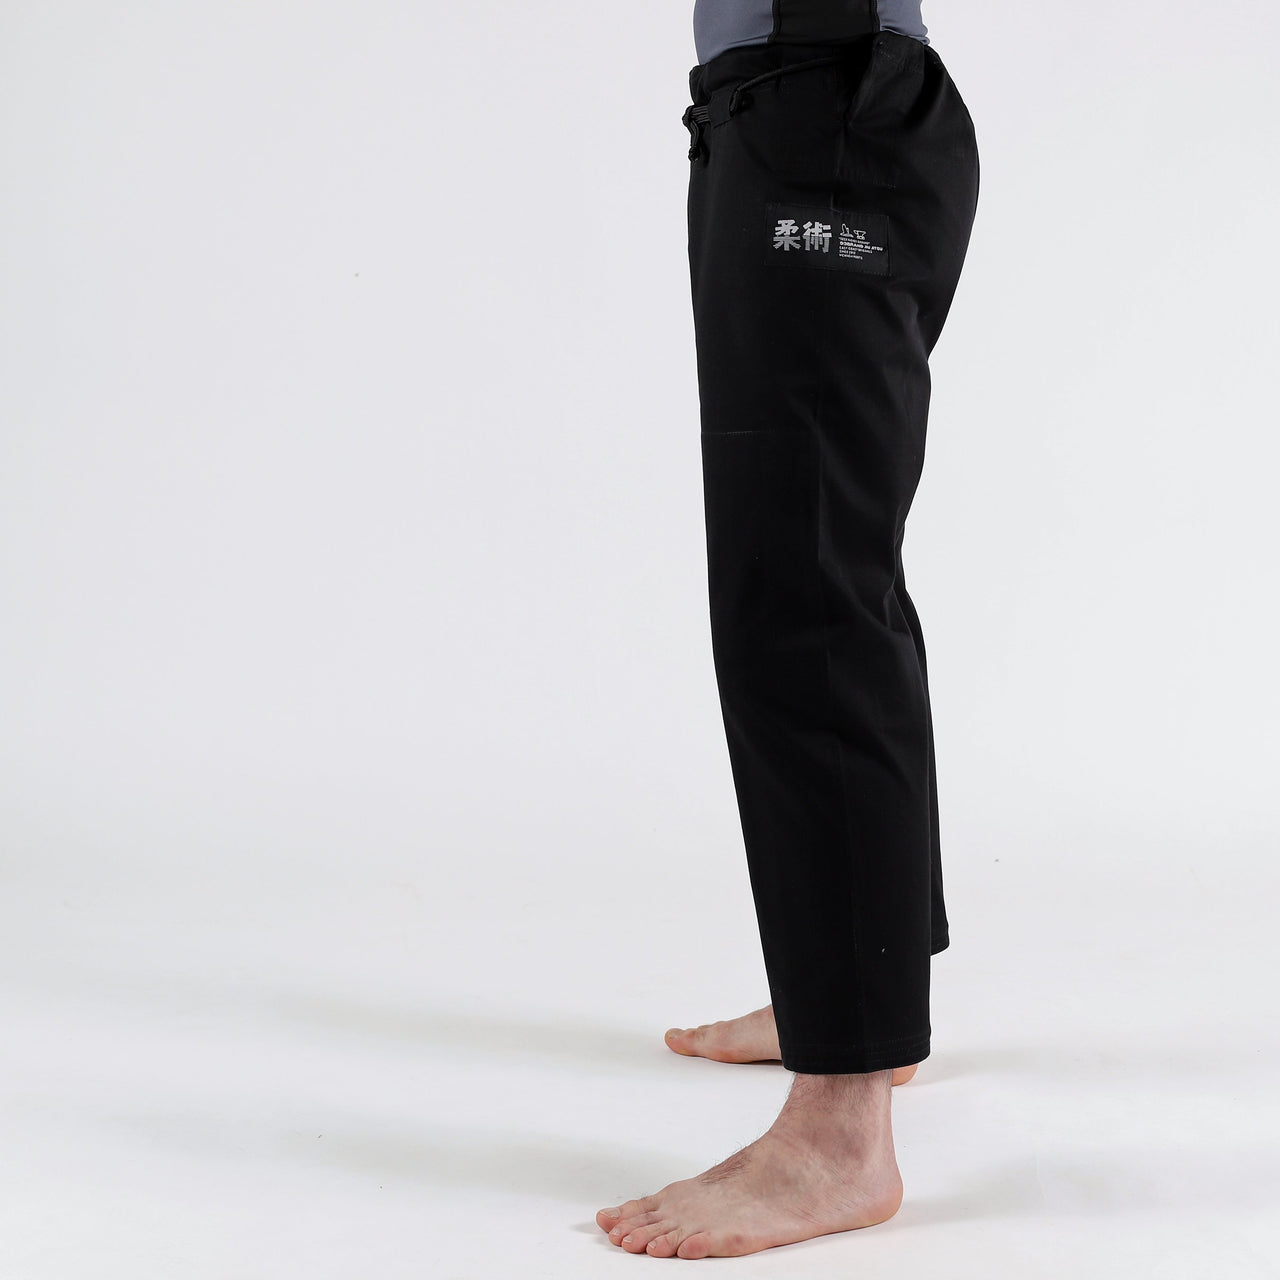 93brand Separate Women's BJJ Gi Pants - Black